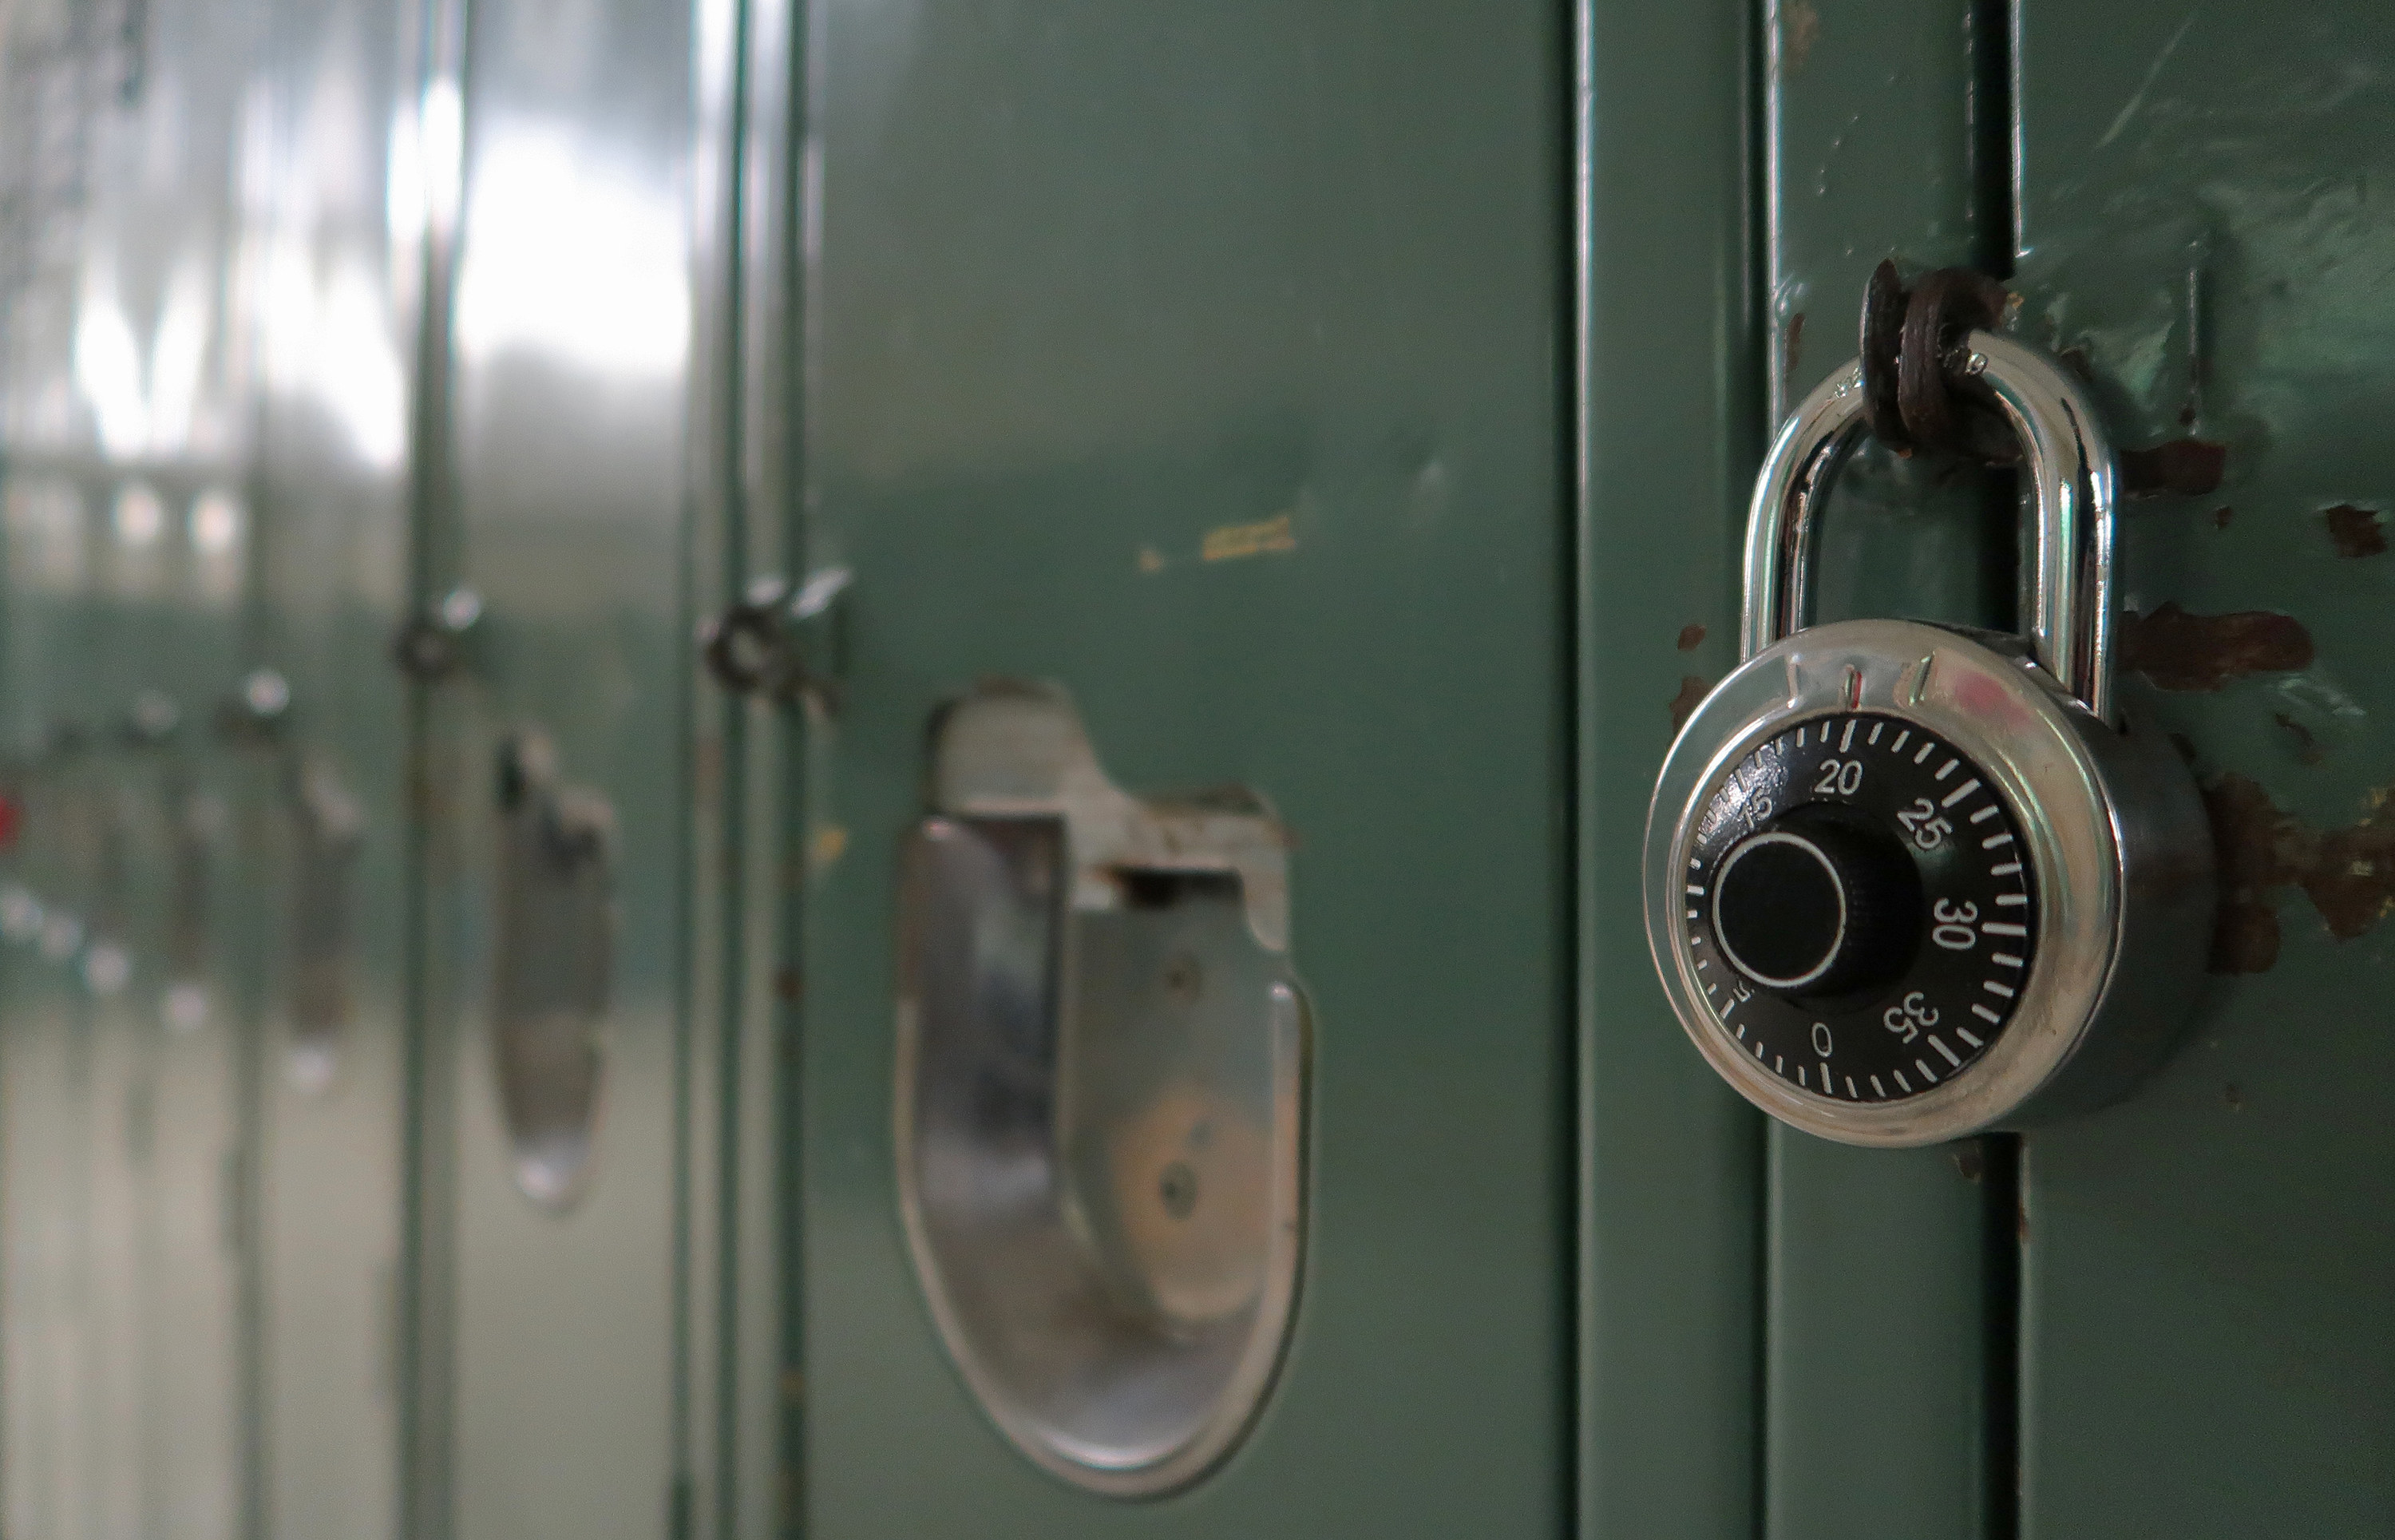 lockers in a high school hallway